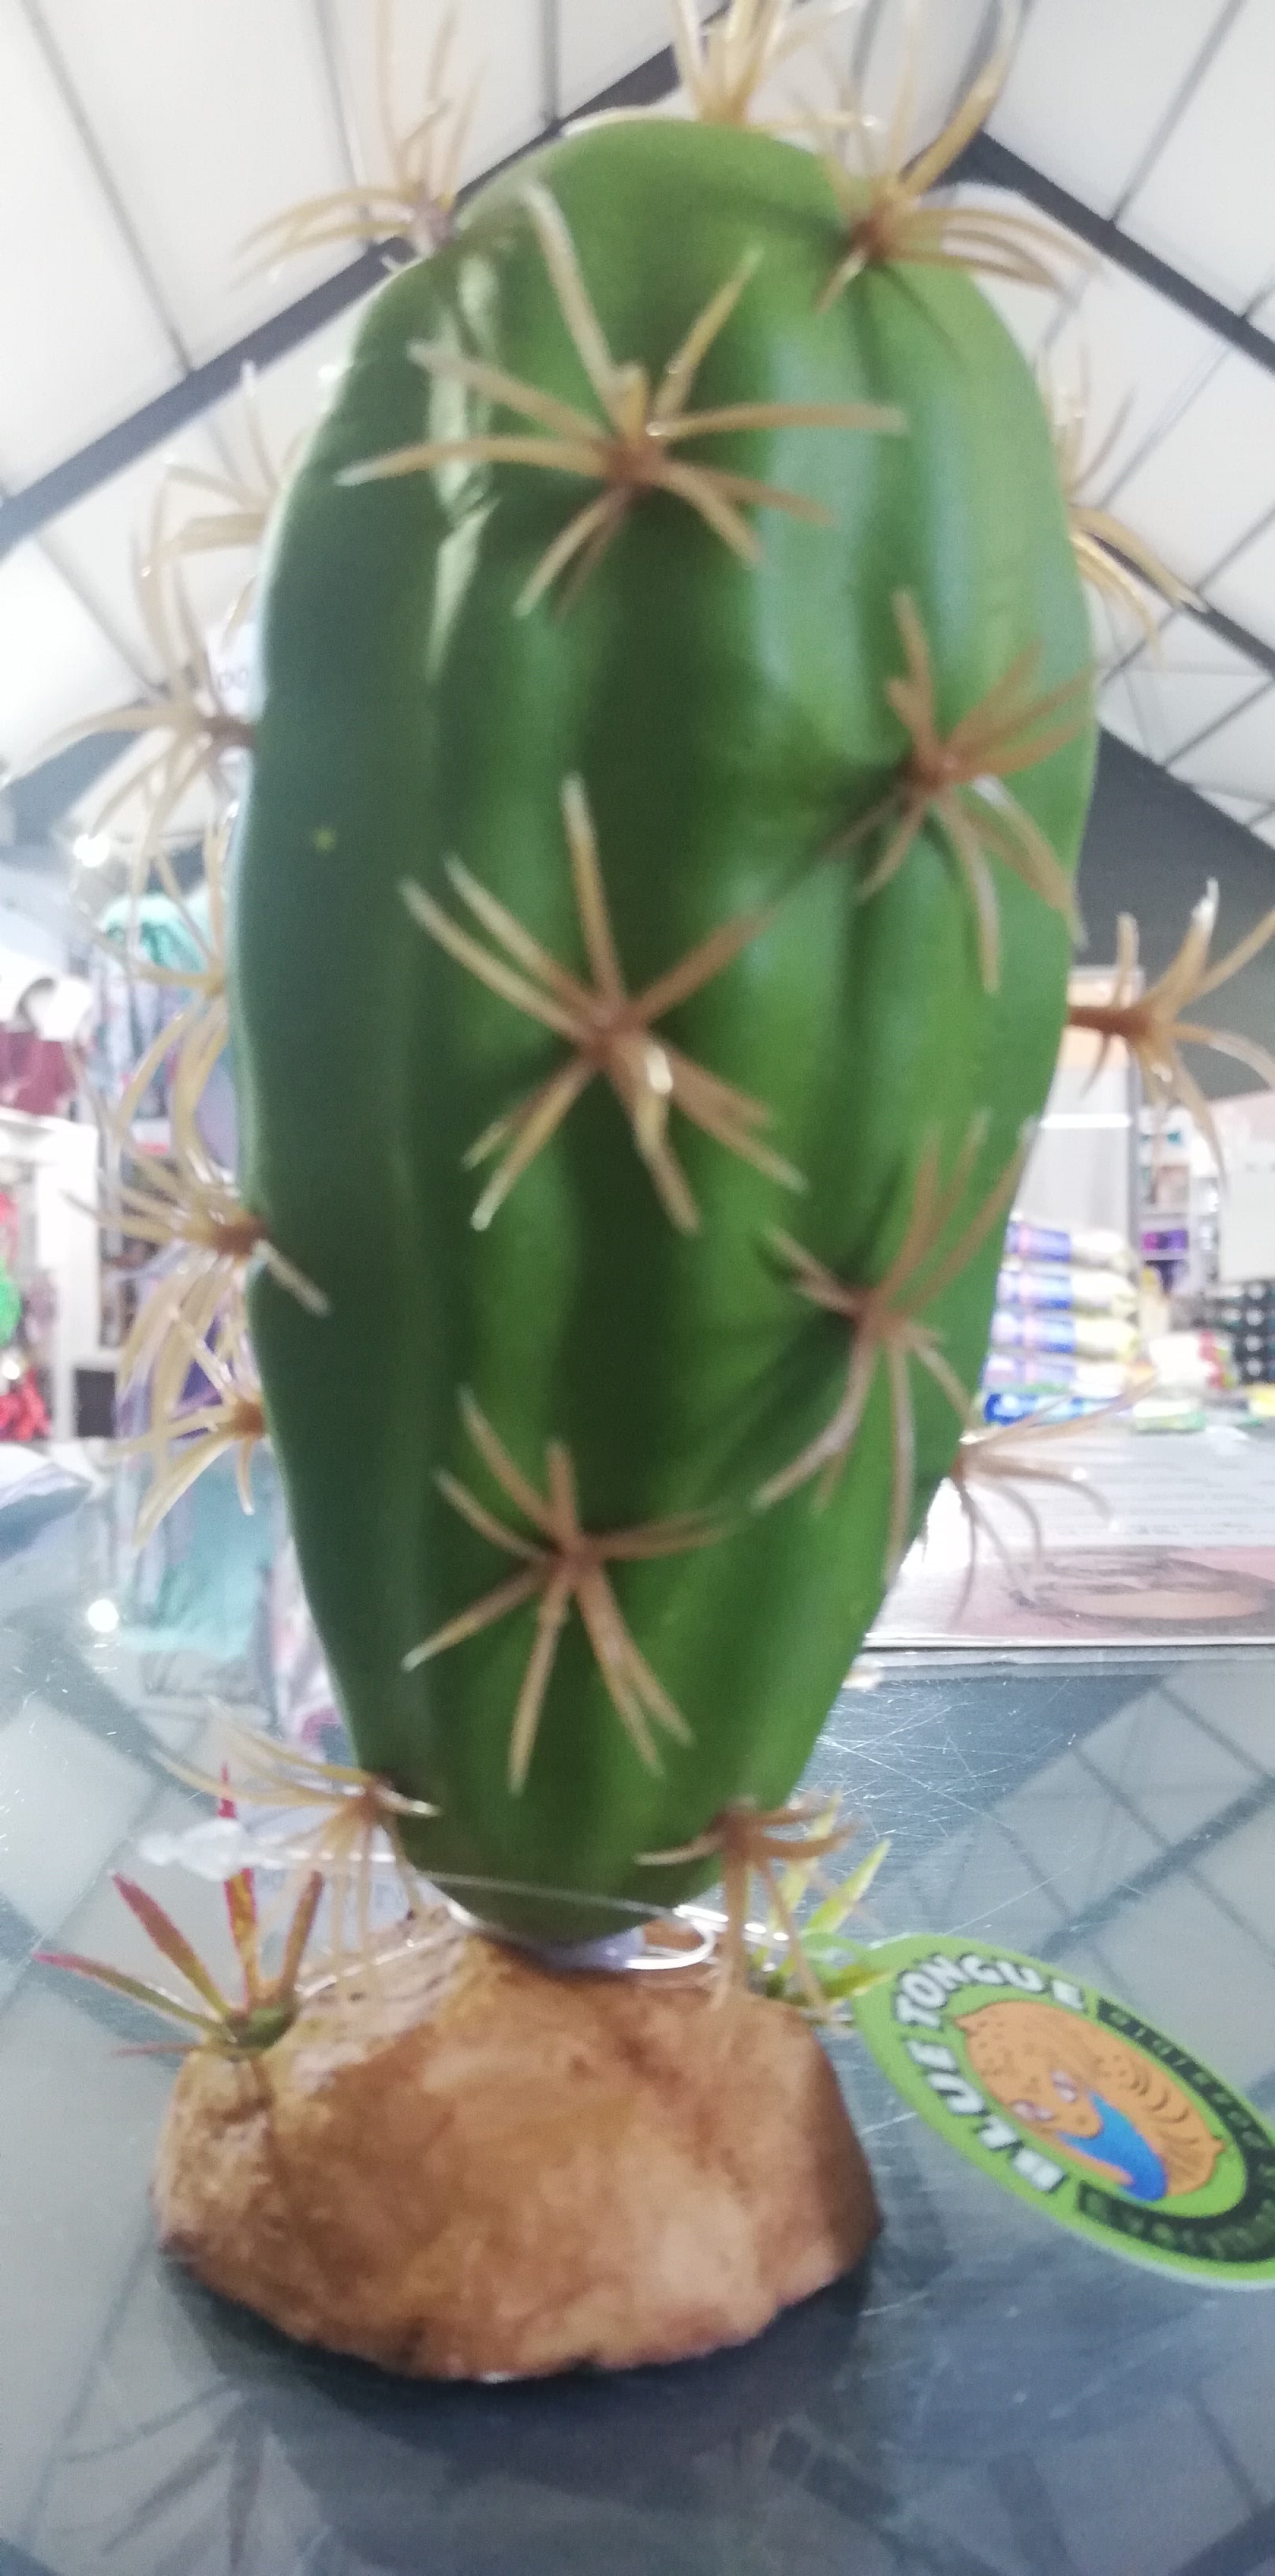 Cactus Plant QM-133